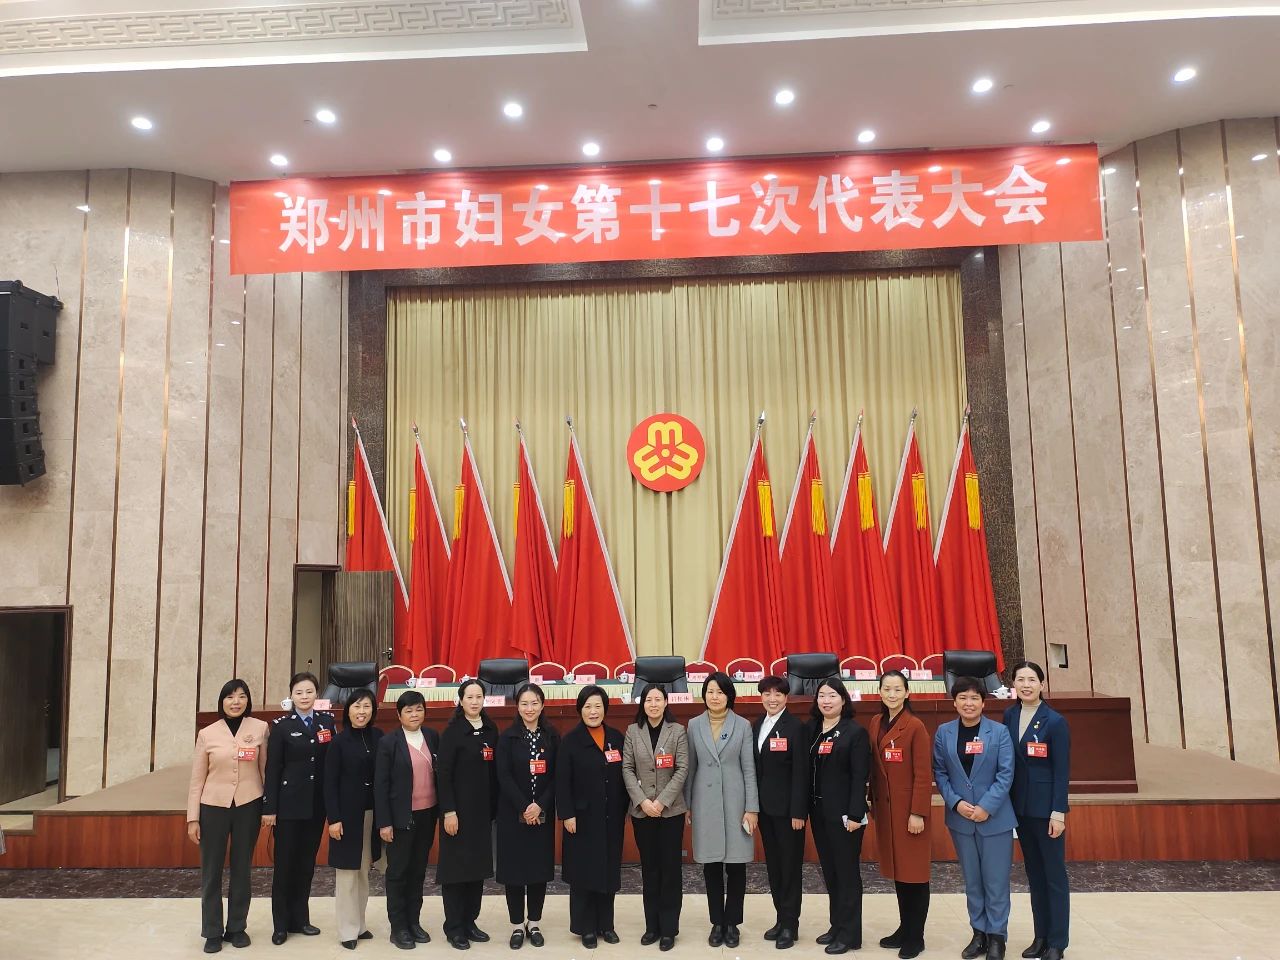 Chen Xuemei, Chairman of Chen's Sun, attended the 17th Women's Congress of Zhengzhou as a representative of the company